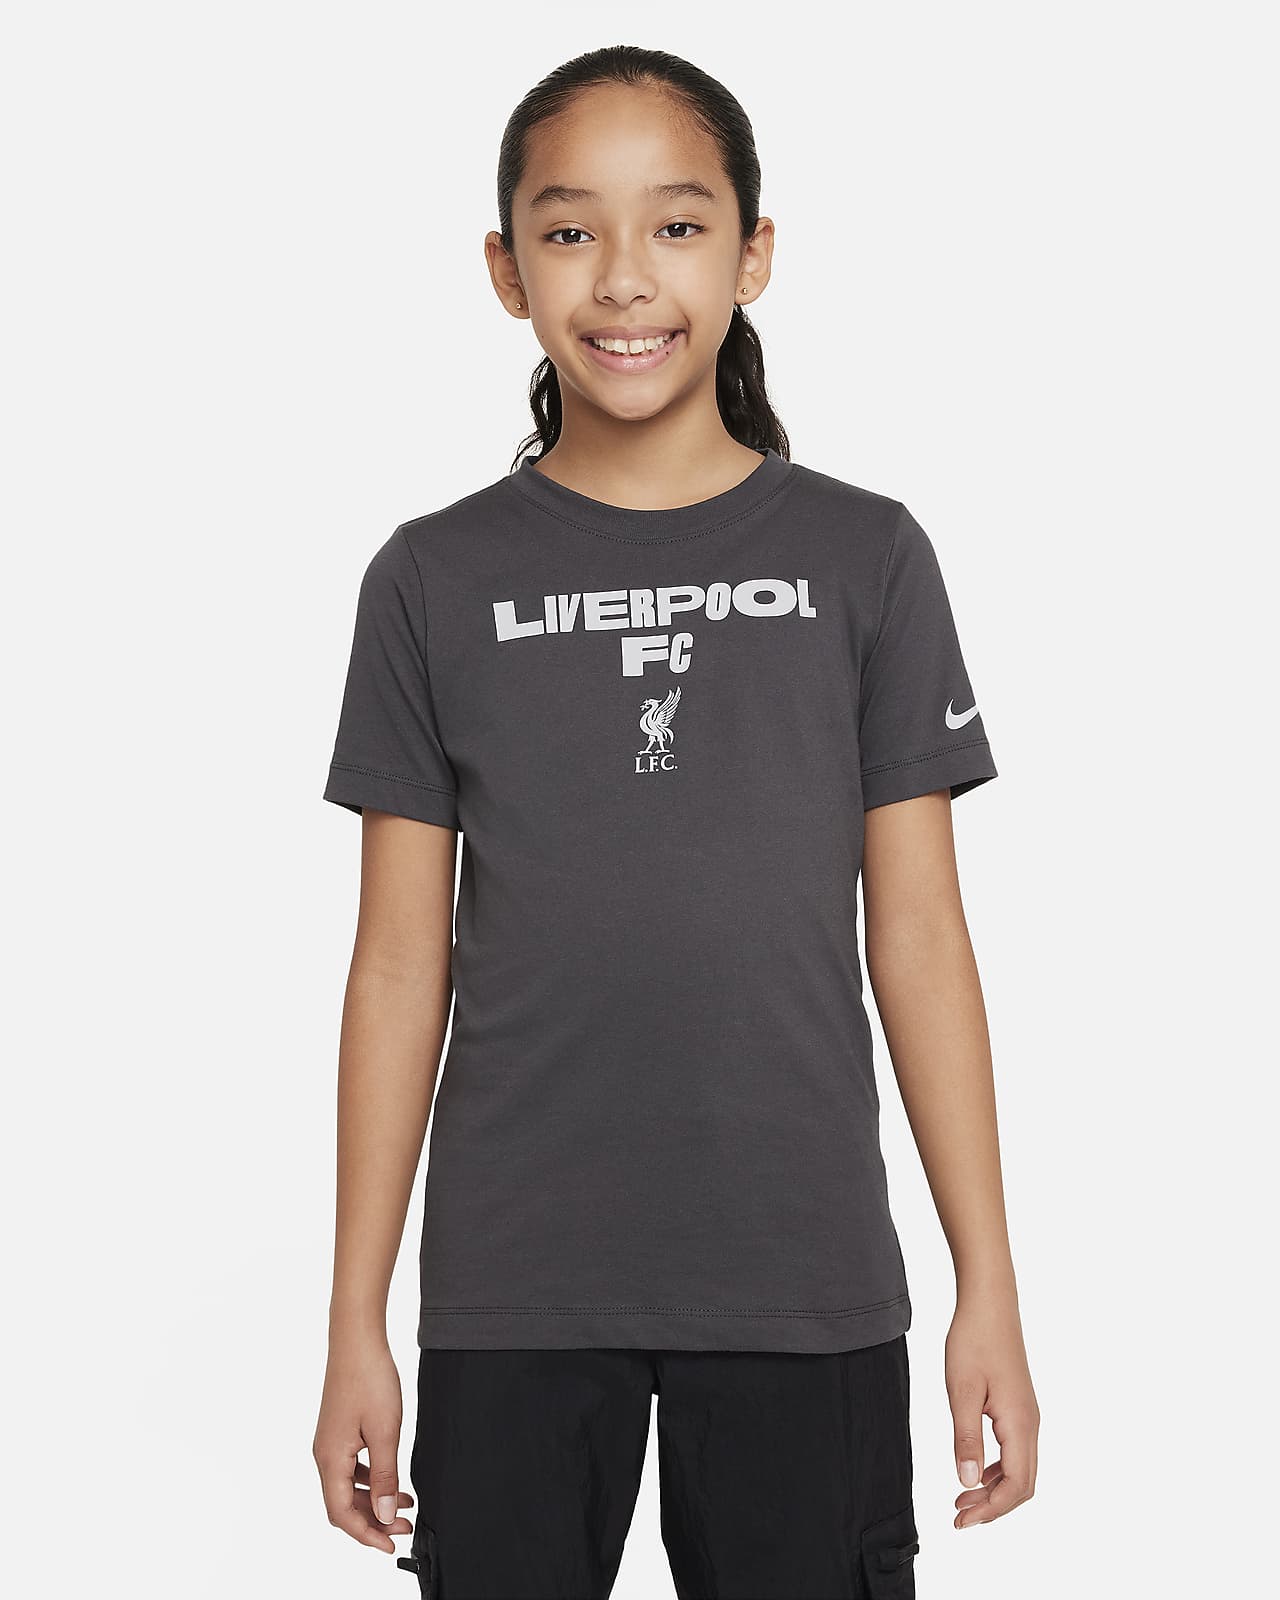 T-shirt da calcio Nike Liverpool FC – Ragazzo/a